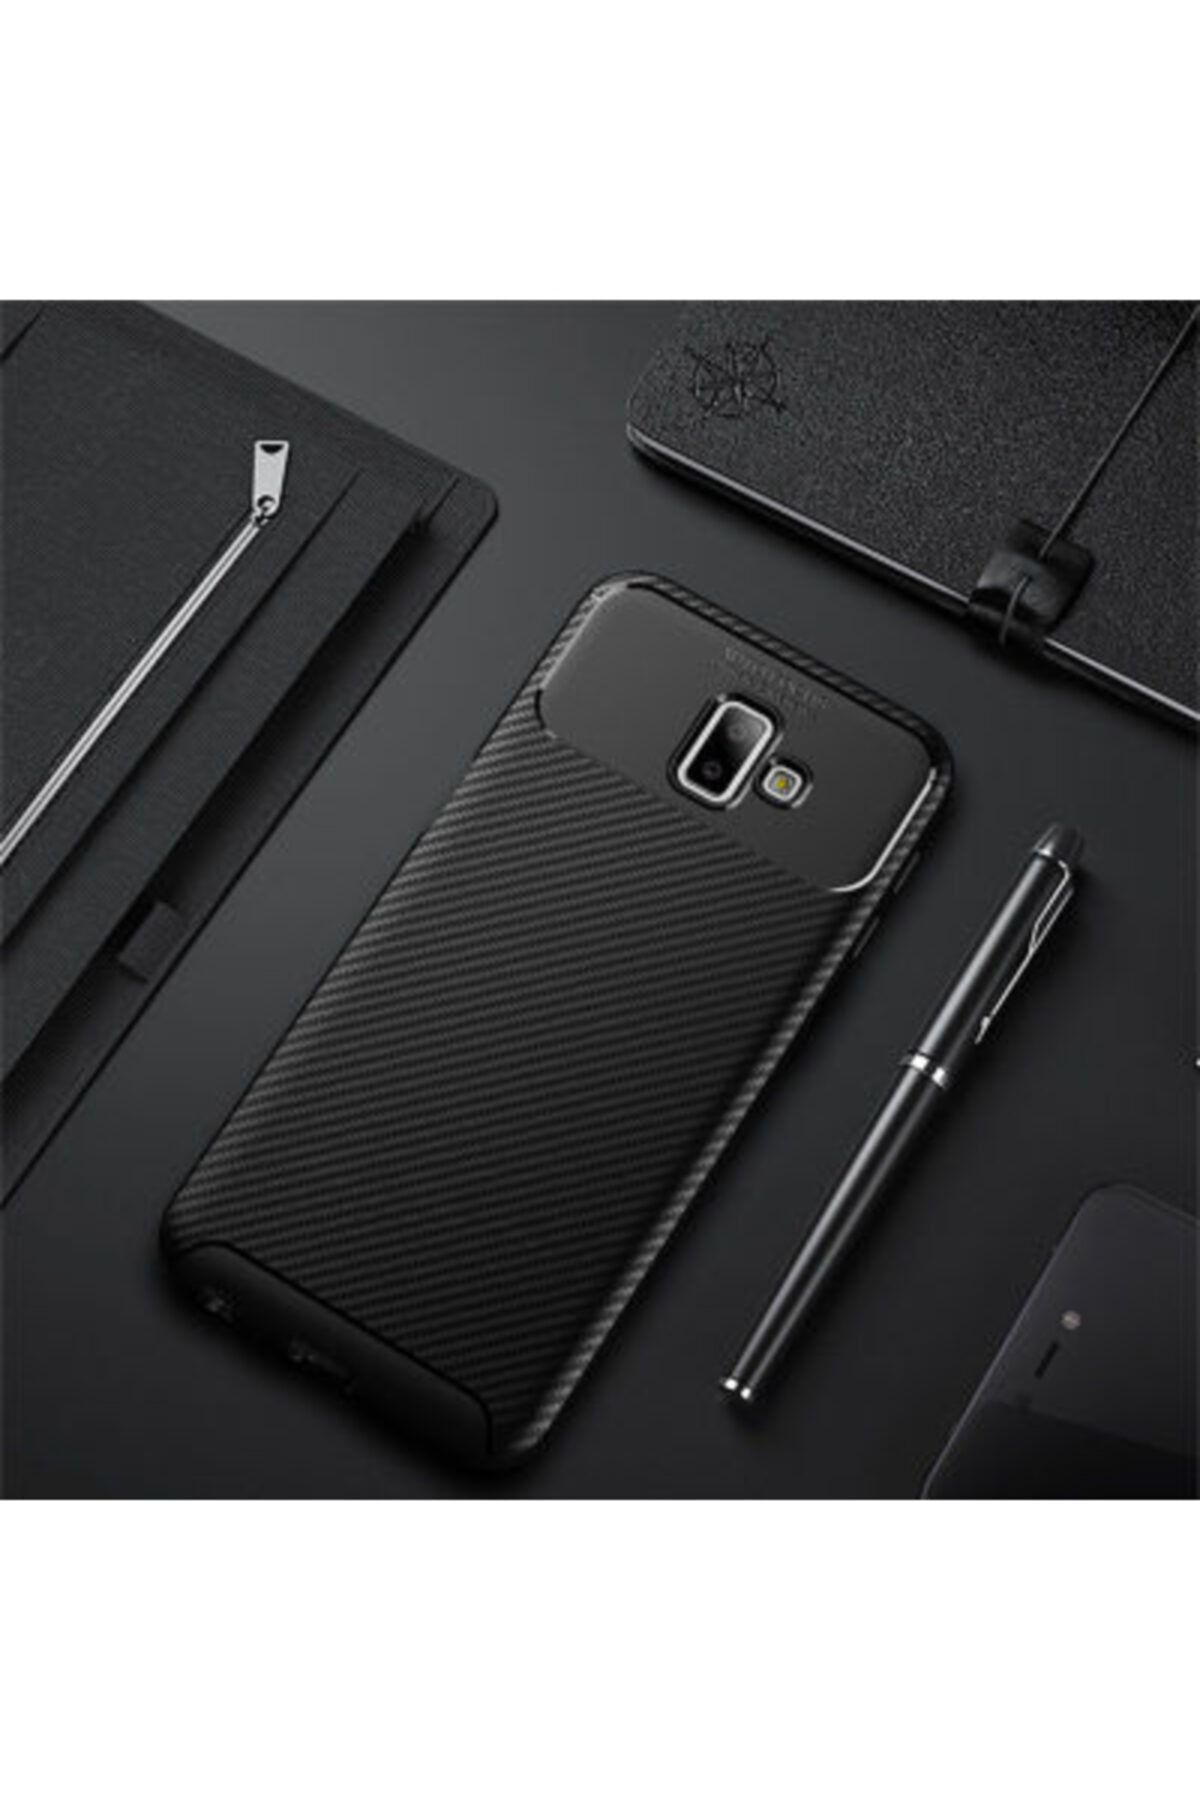 Pickcase Galaxy J6 Plus Kılıf Negro Silikon Siyah